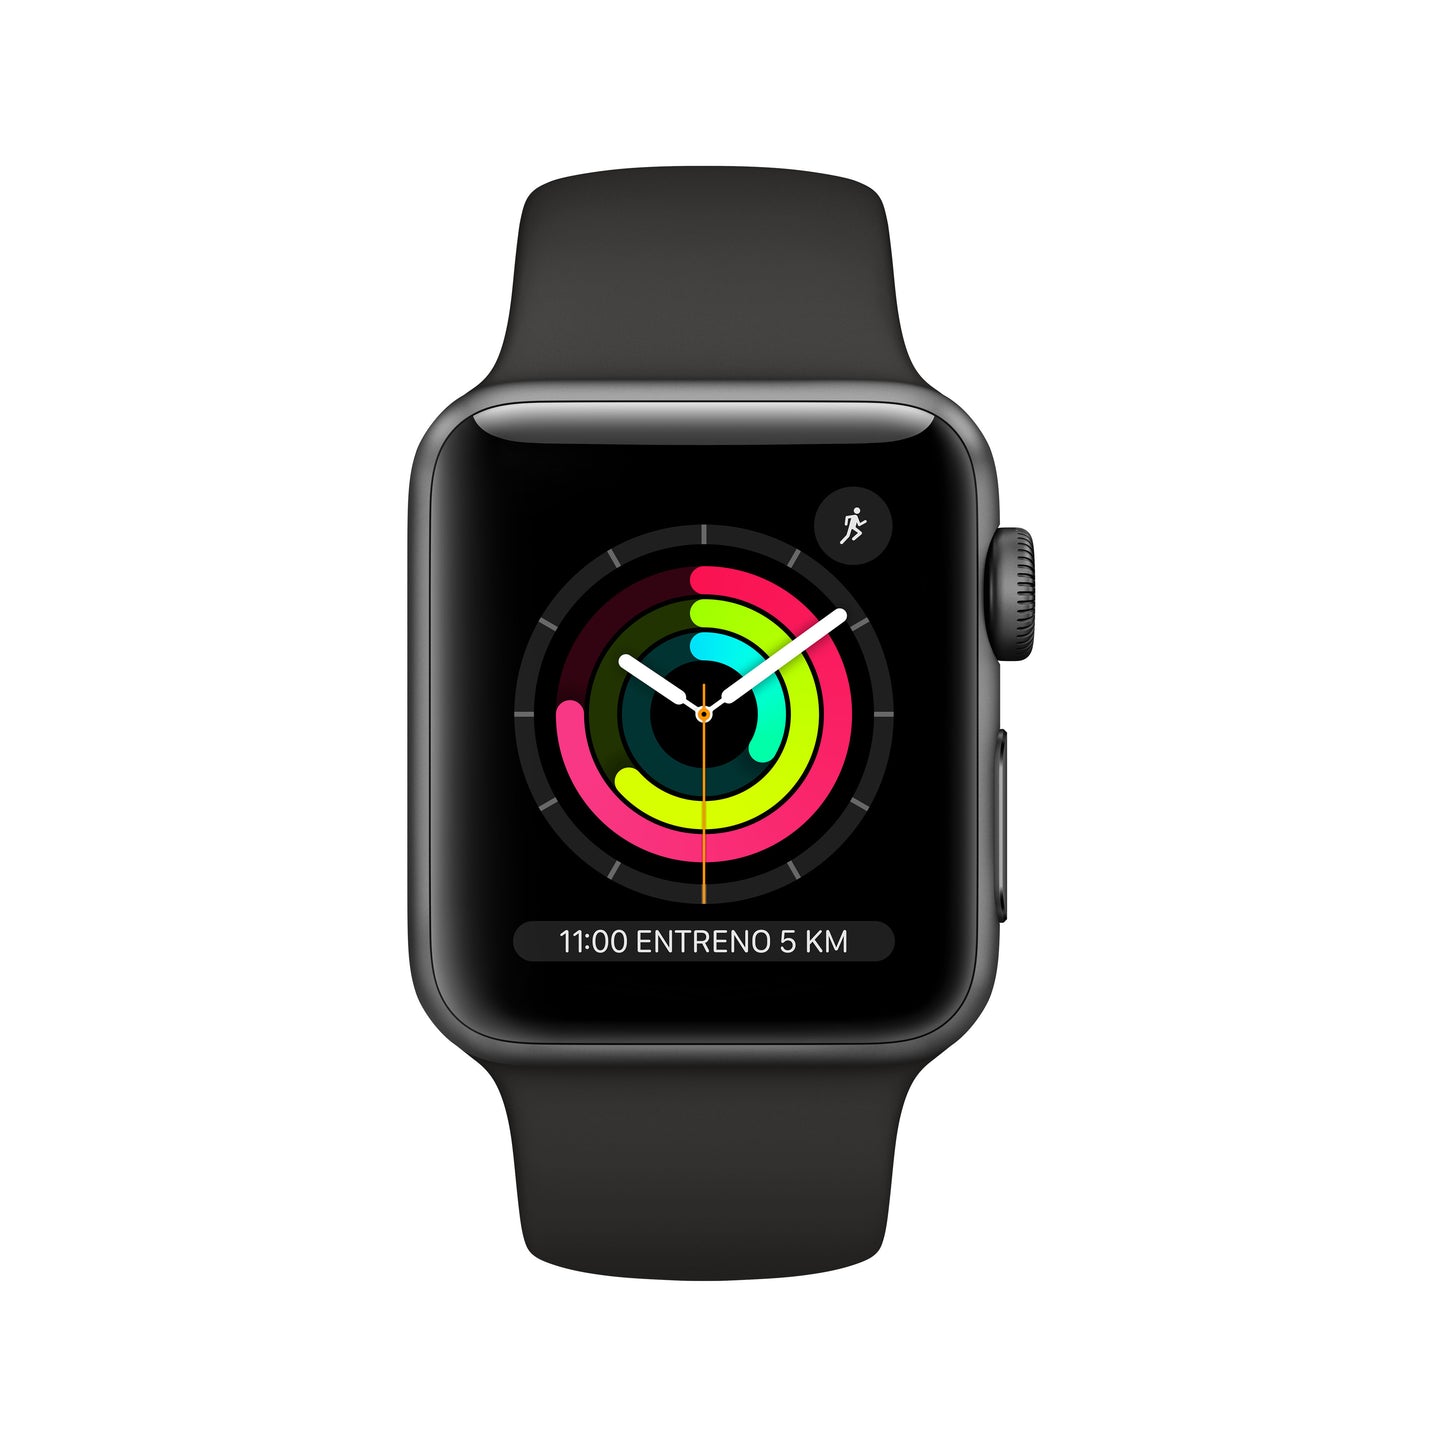 Apple Watch Series 3 (GPS) con caja de 38 mm de aluminio en gris espacial y correa deportiva negra